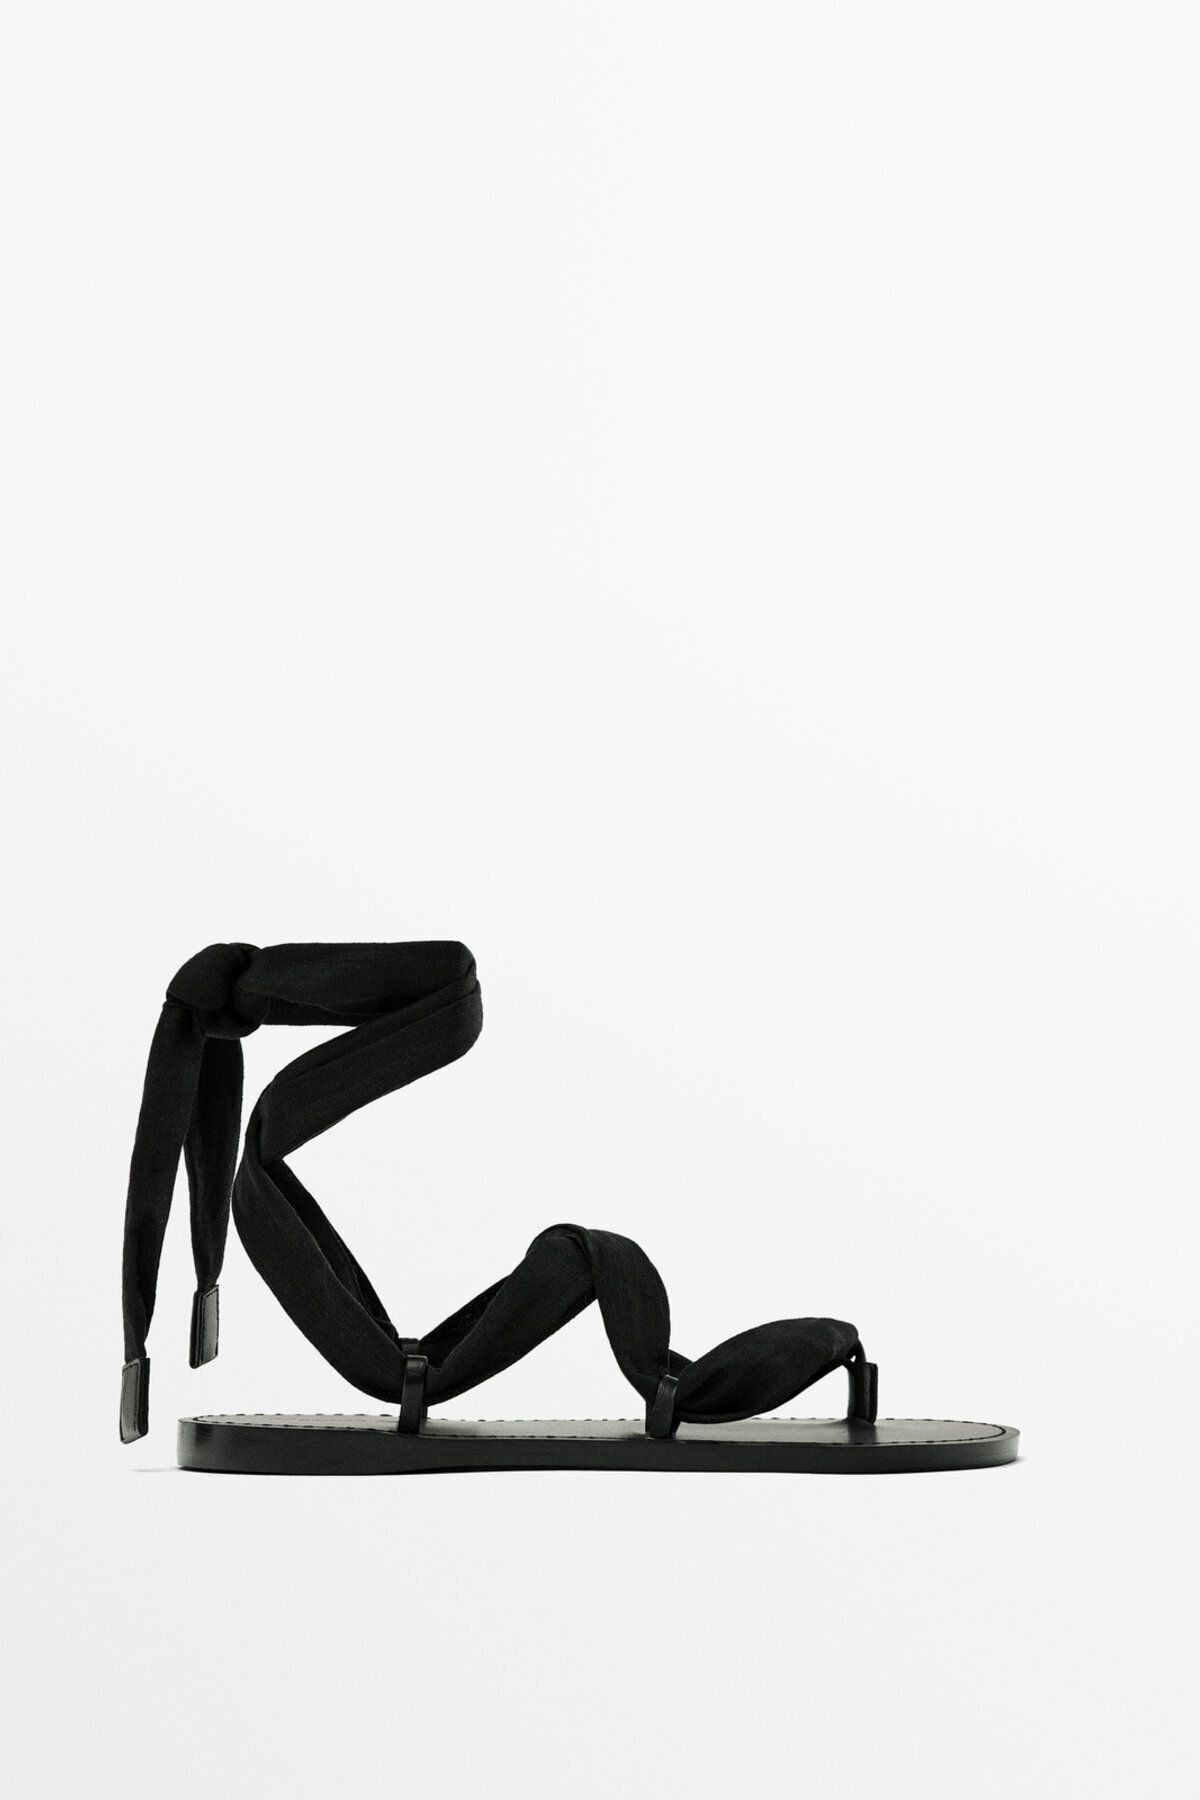 Massimo Dutti Kumaş çok bantlı düz sandalet